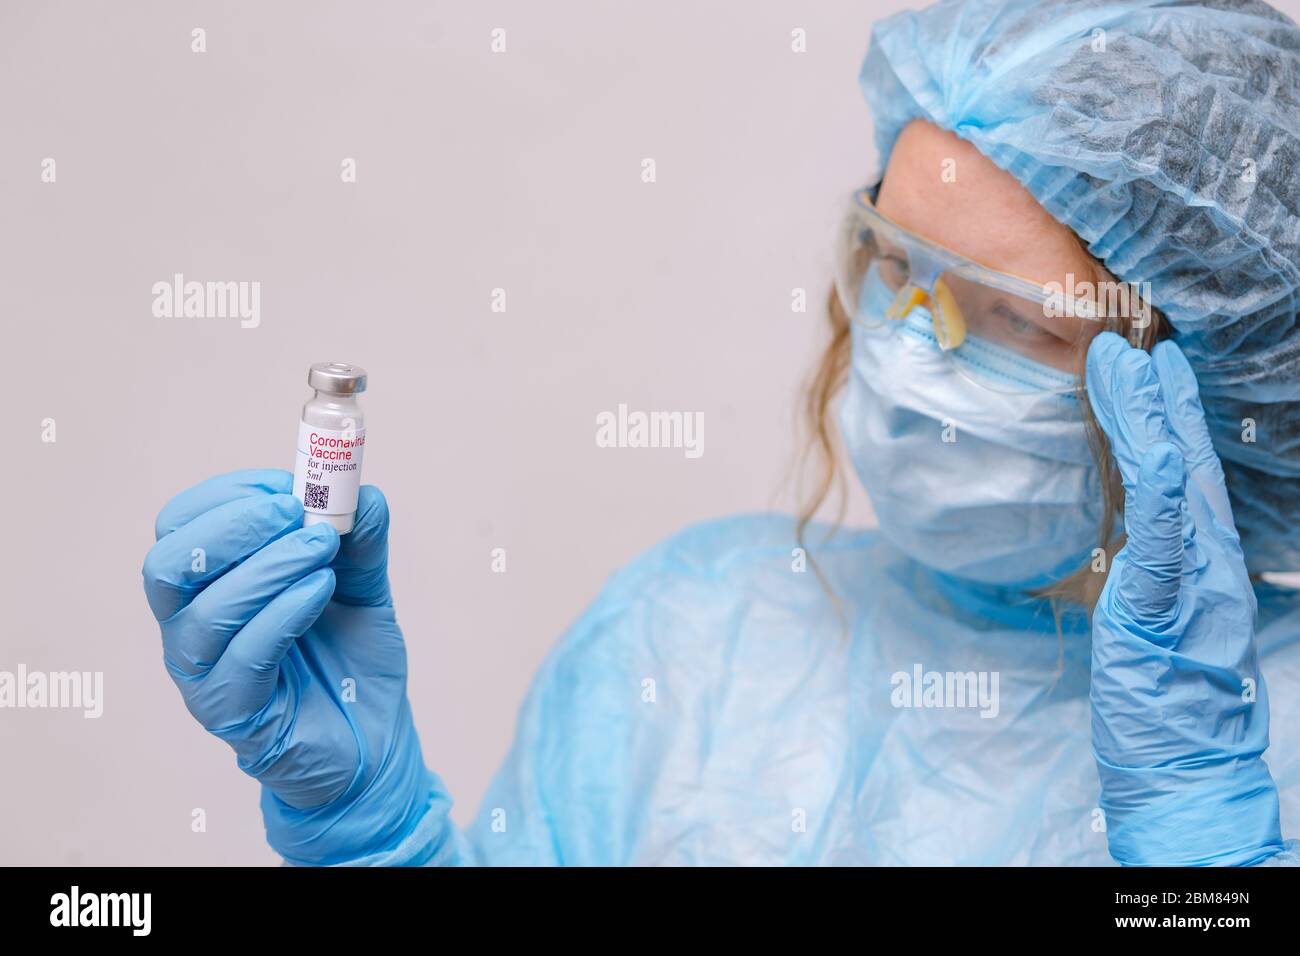 Coronavirus-Impfstoff. Arzt mit Impfstoff. Krankenschwester mit einem Coronavirus-Impfstoff. Hände, die eine Ampulle gegen Covid-19 halten. Stockfoto